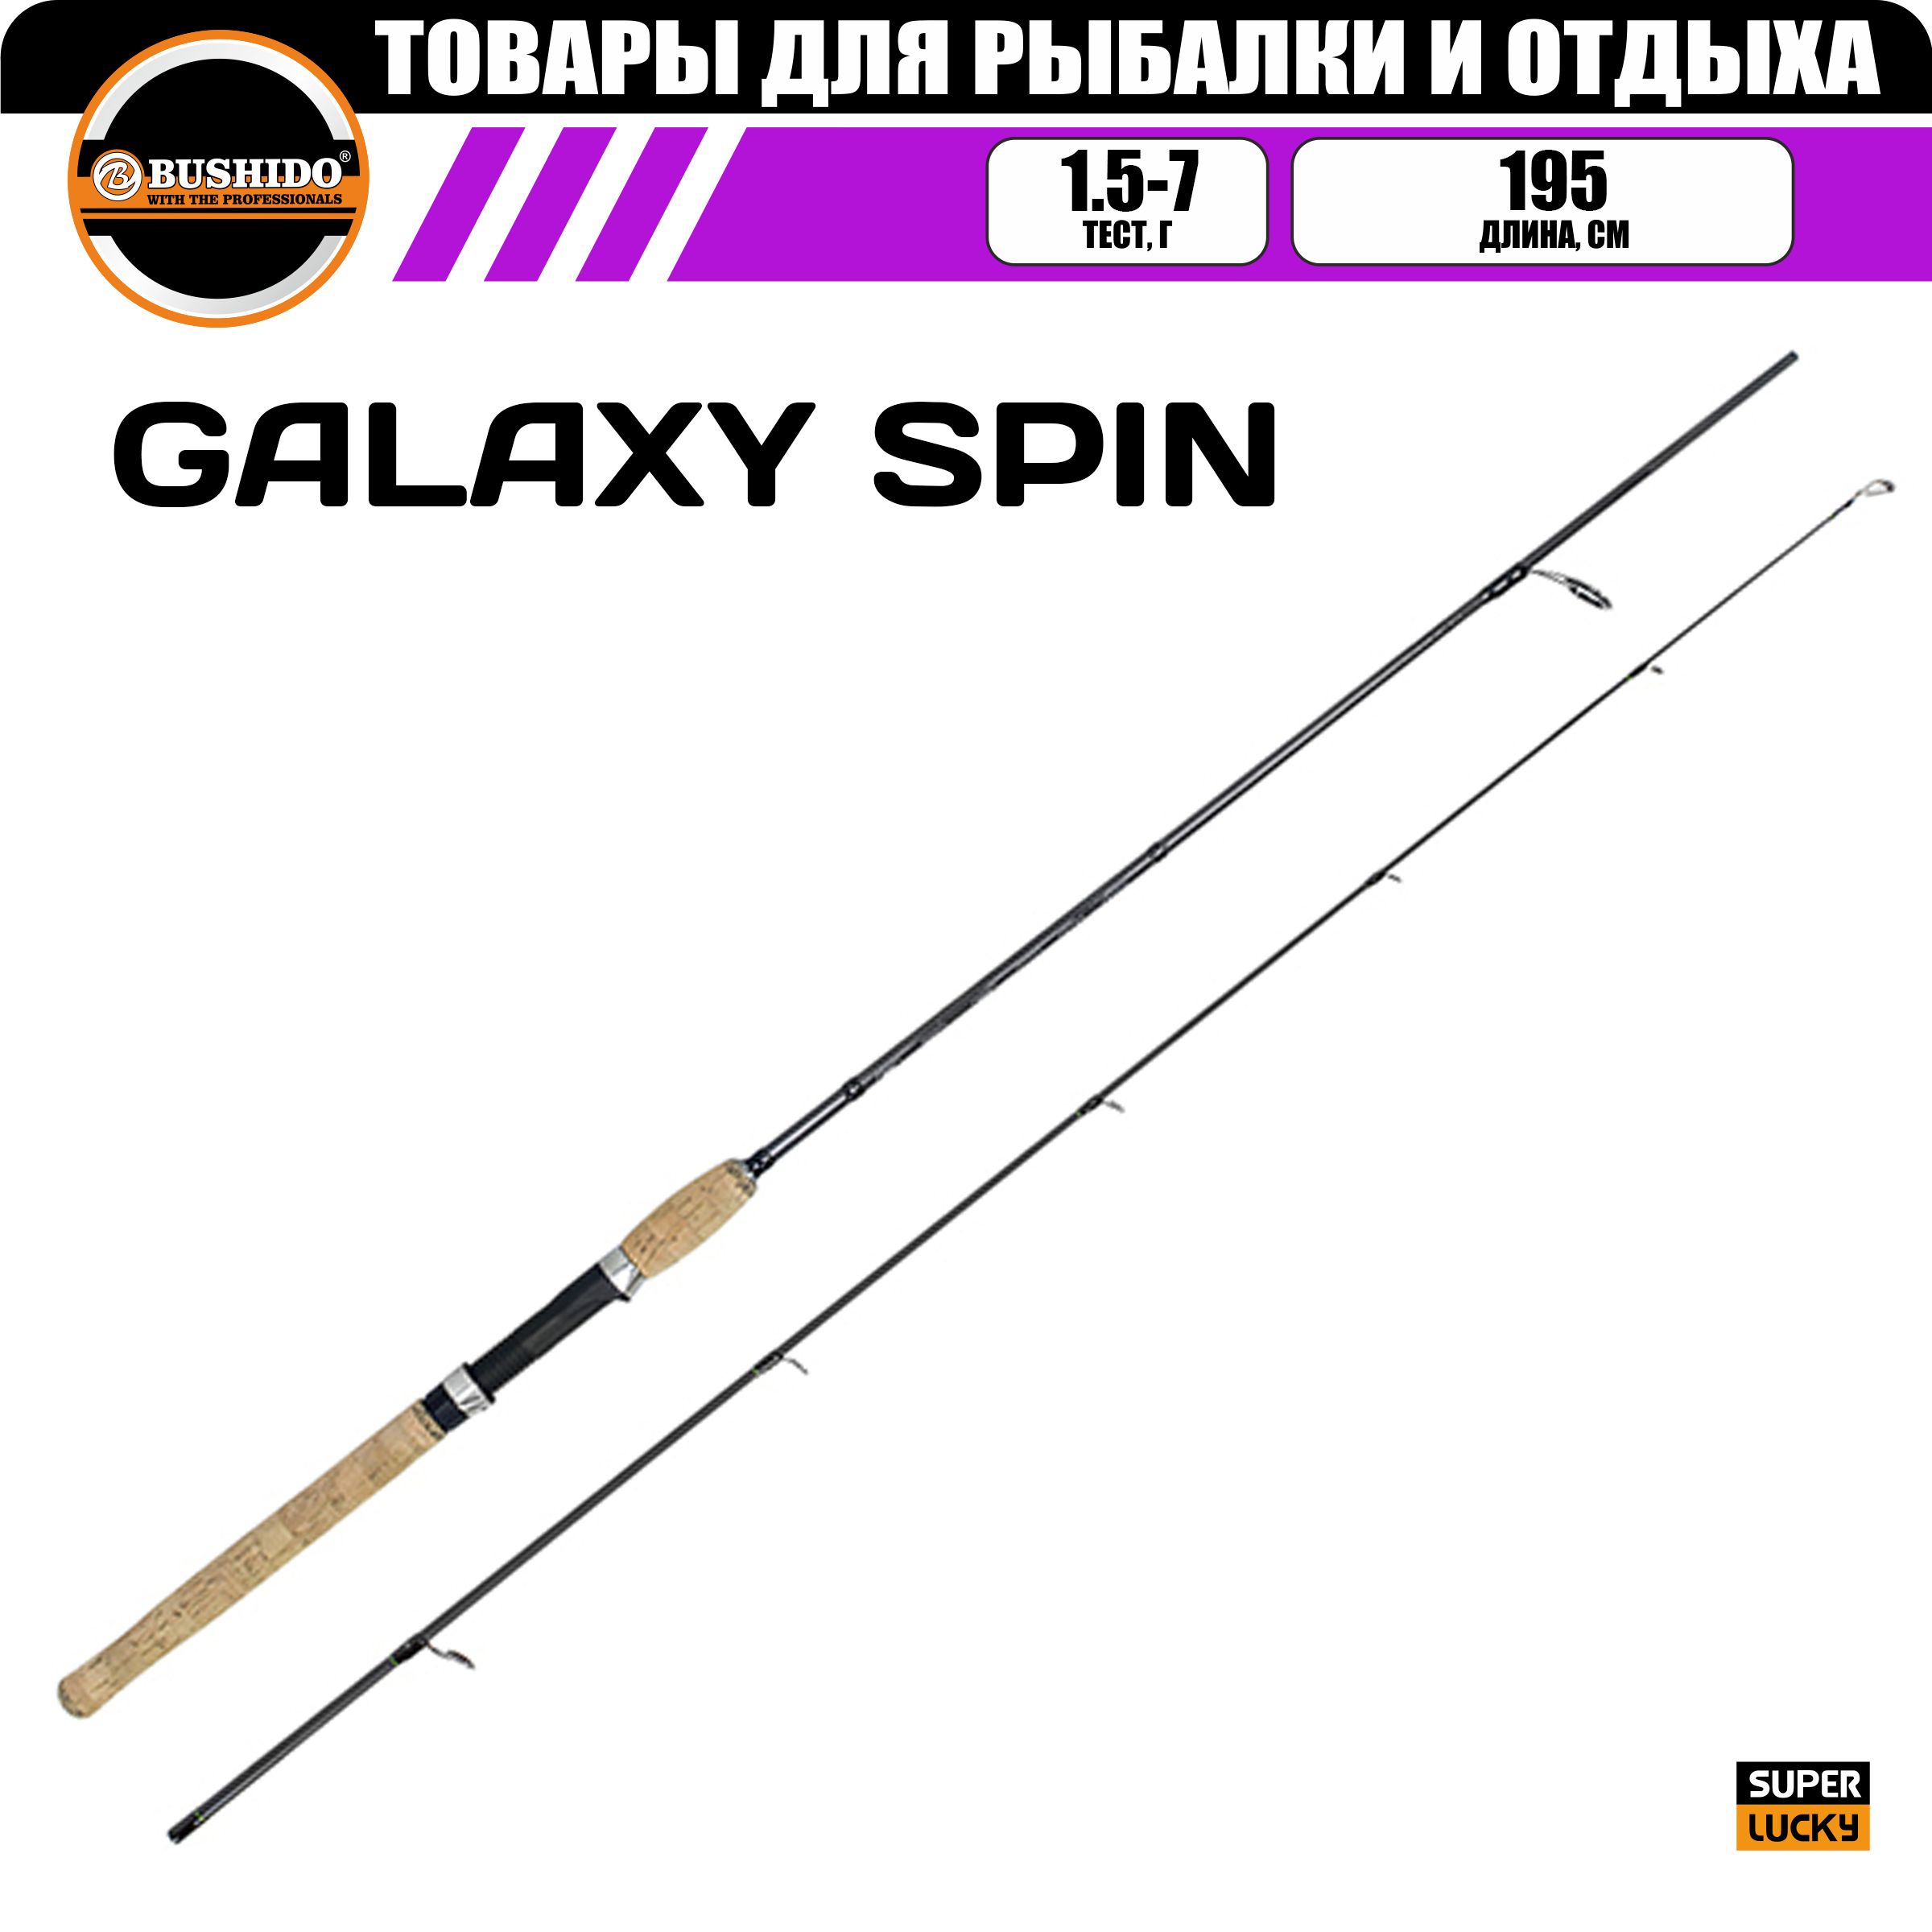 Спиннинг рыболовный BUSHIDO GALAXY 1.95м 1.5-7гр UL